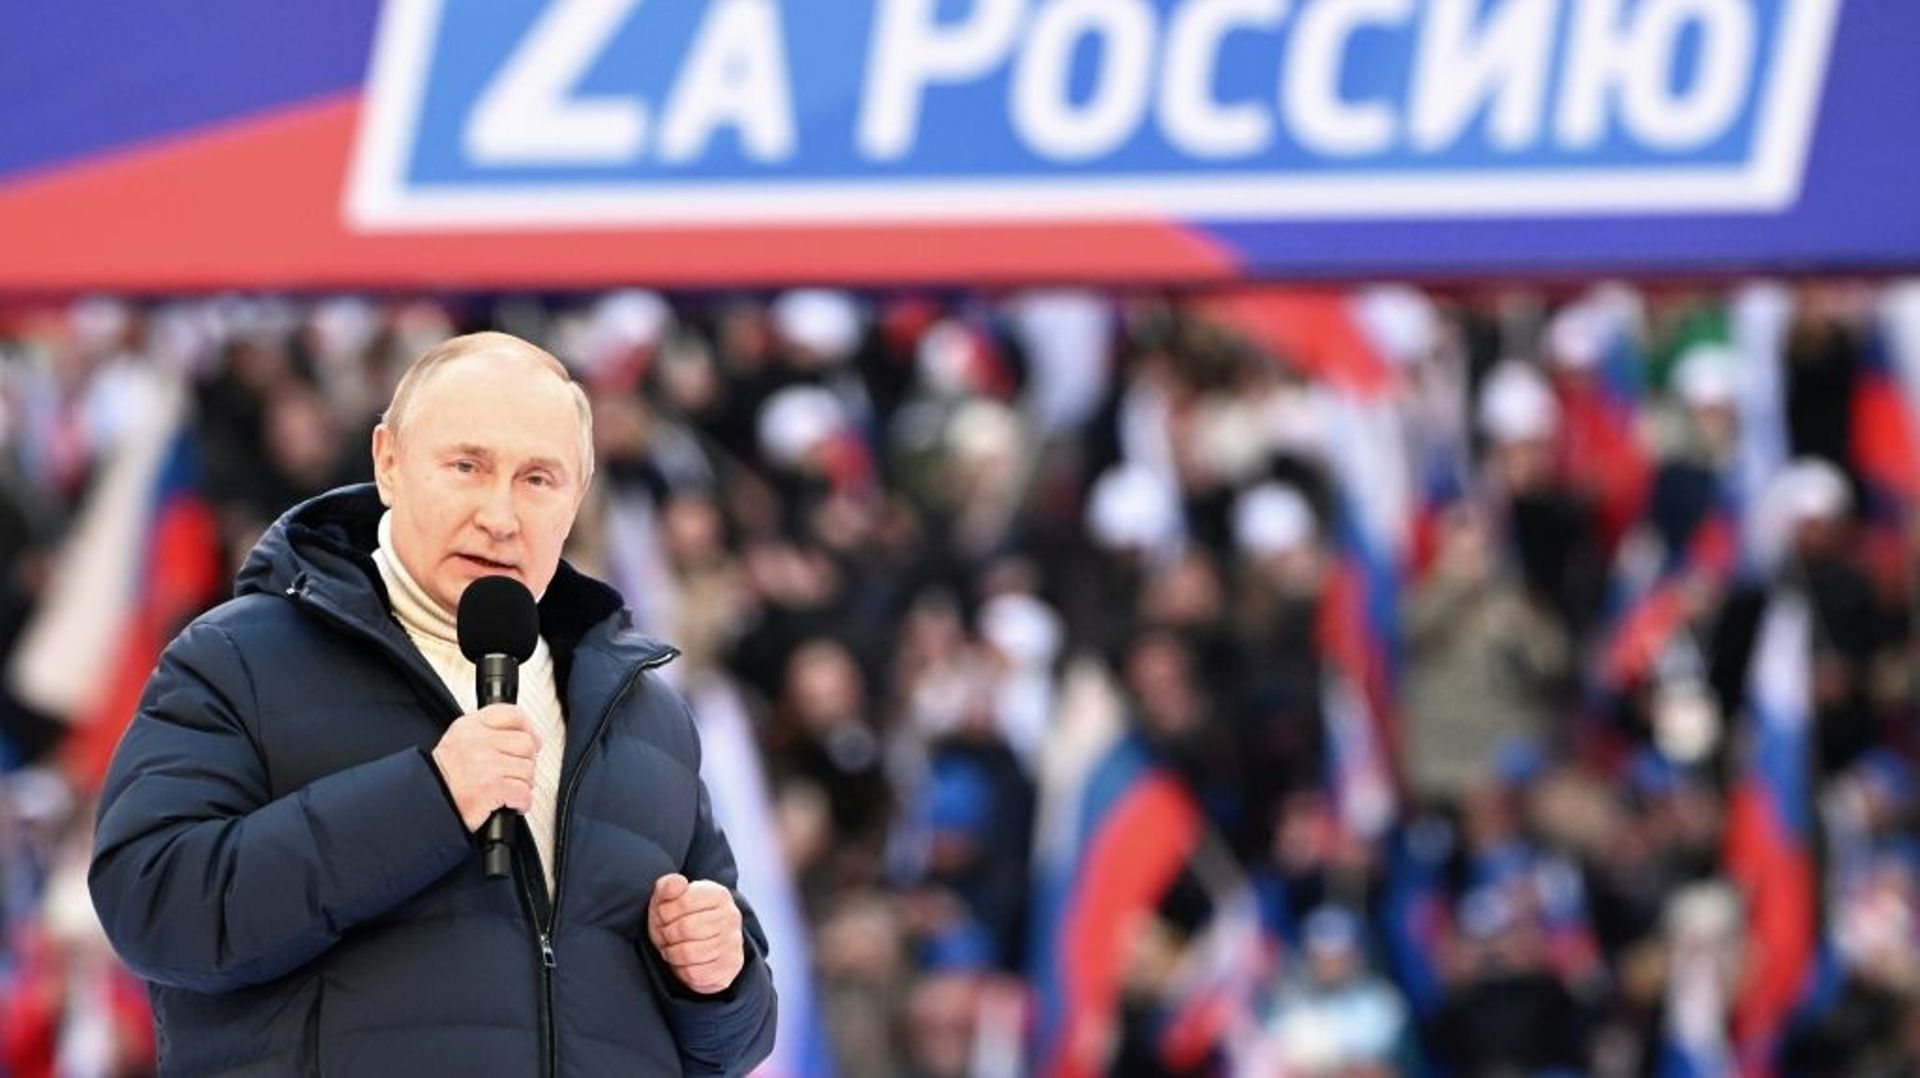 Le président russe Vladimir Poutine au stade Luzhniki de Moscou le 18 mars 2022. La banderole indique "Pour la Russie"